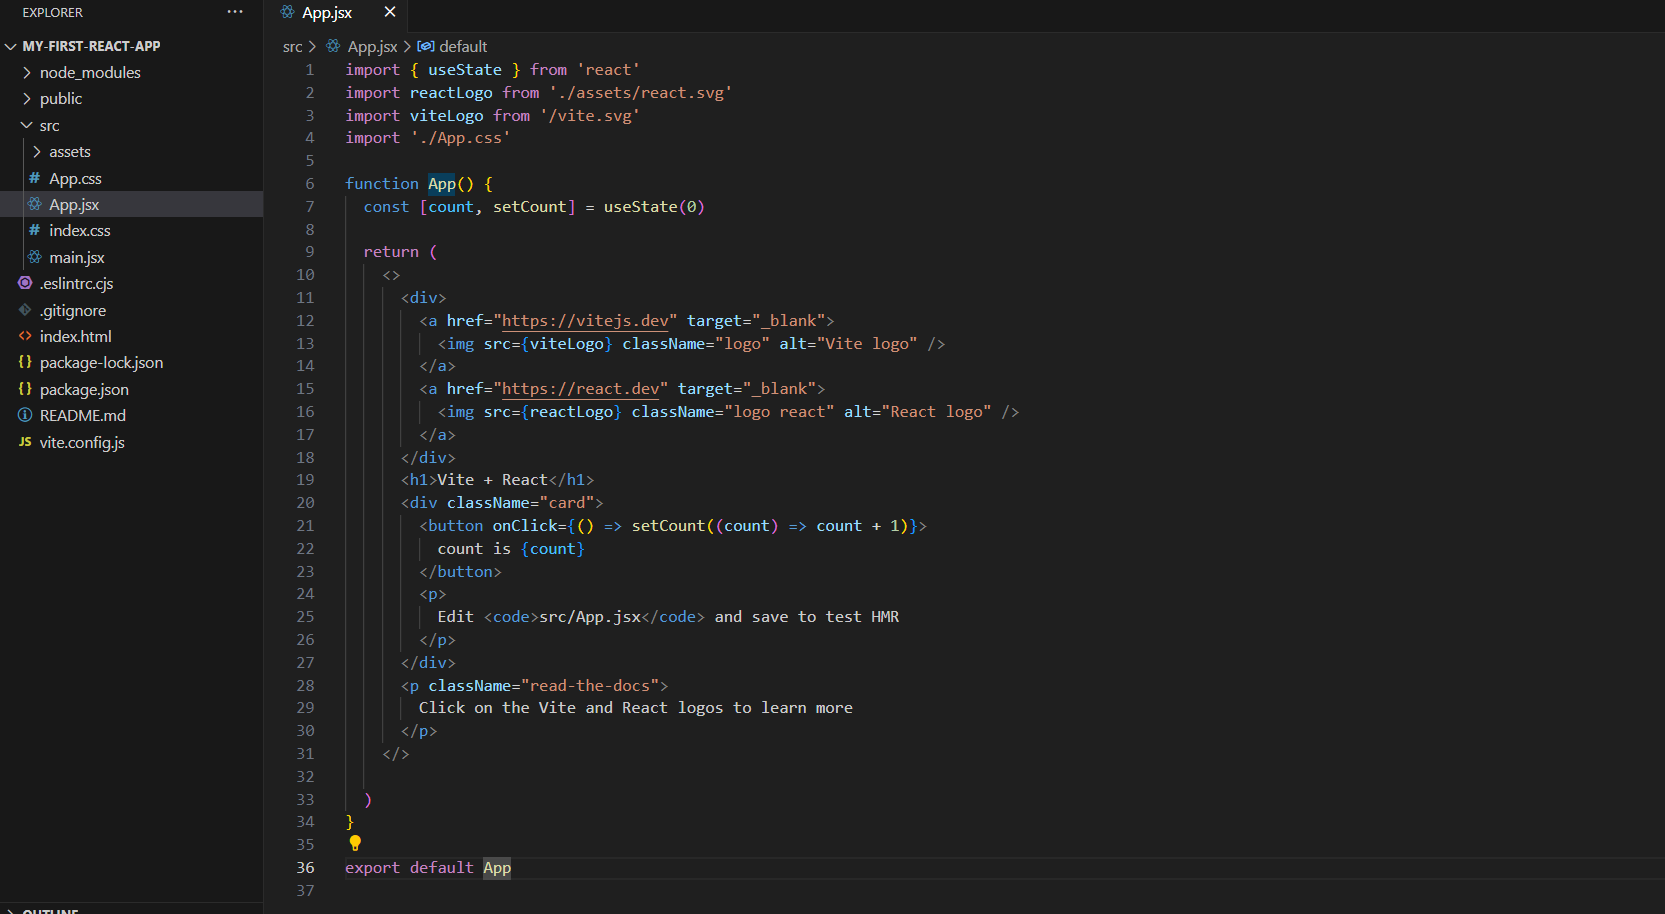 Screenshot of code editor of App.jsx file